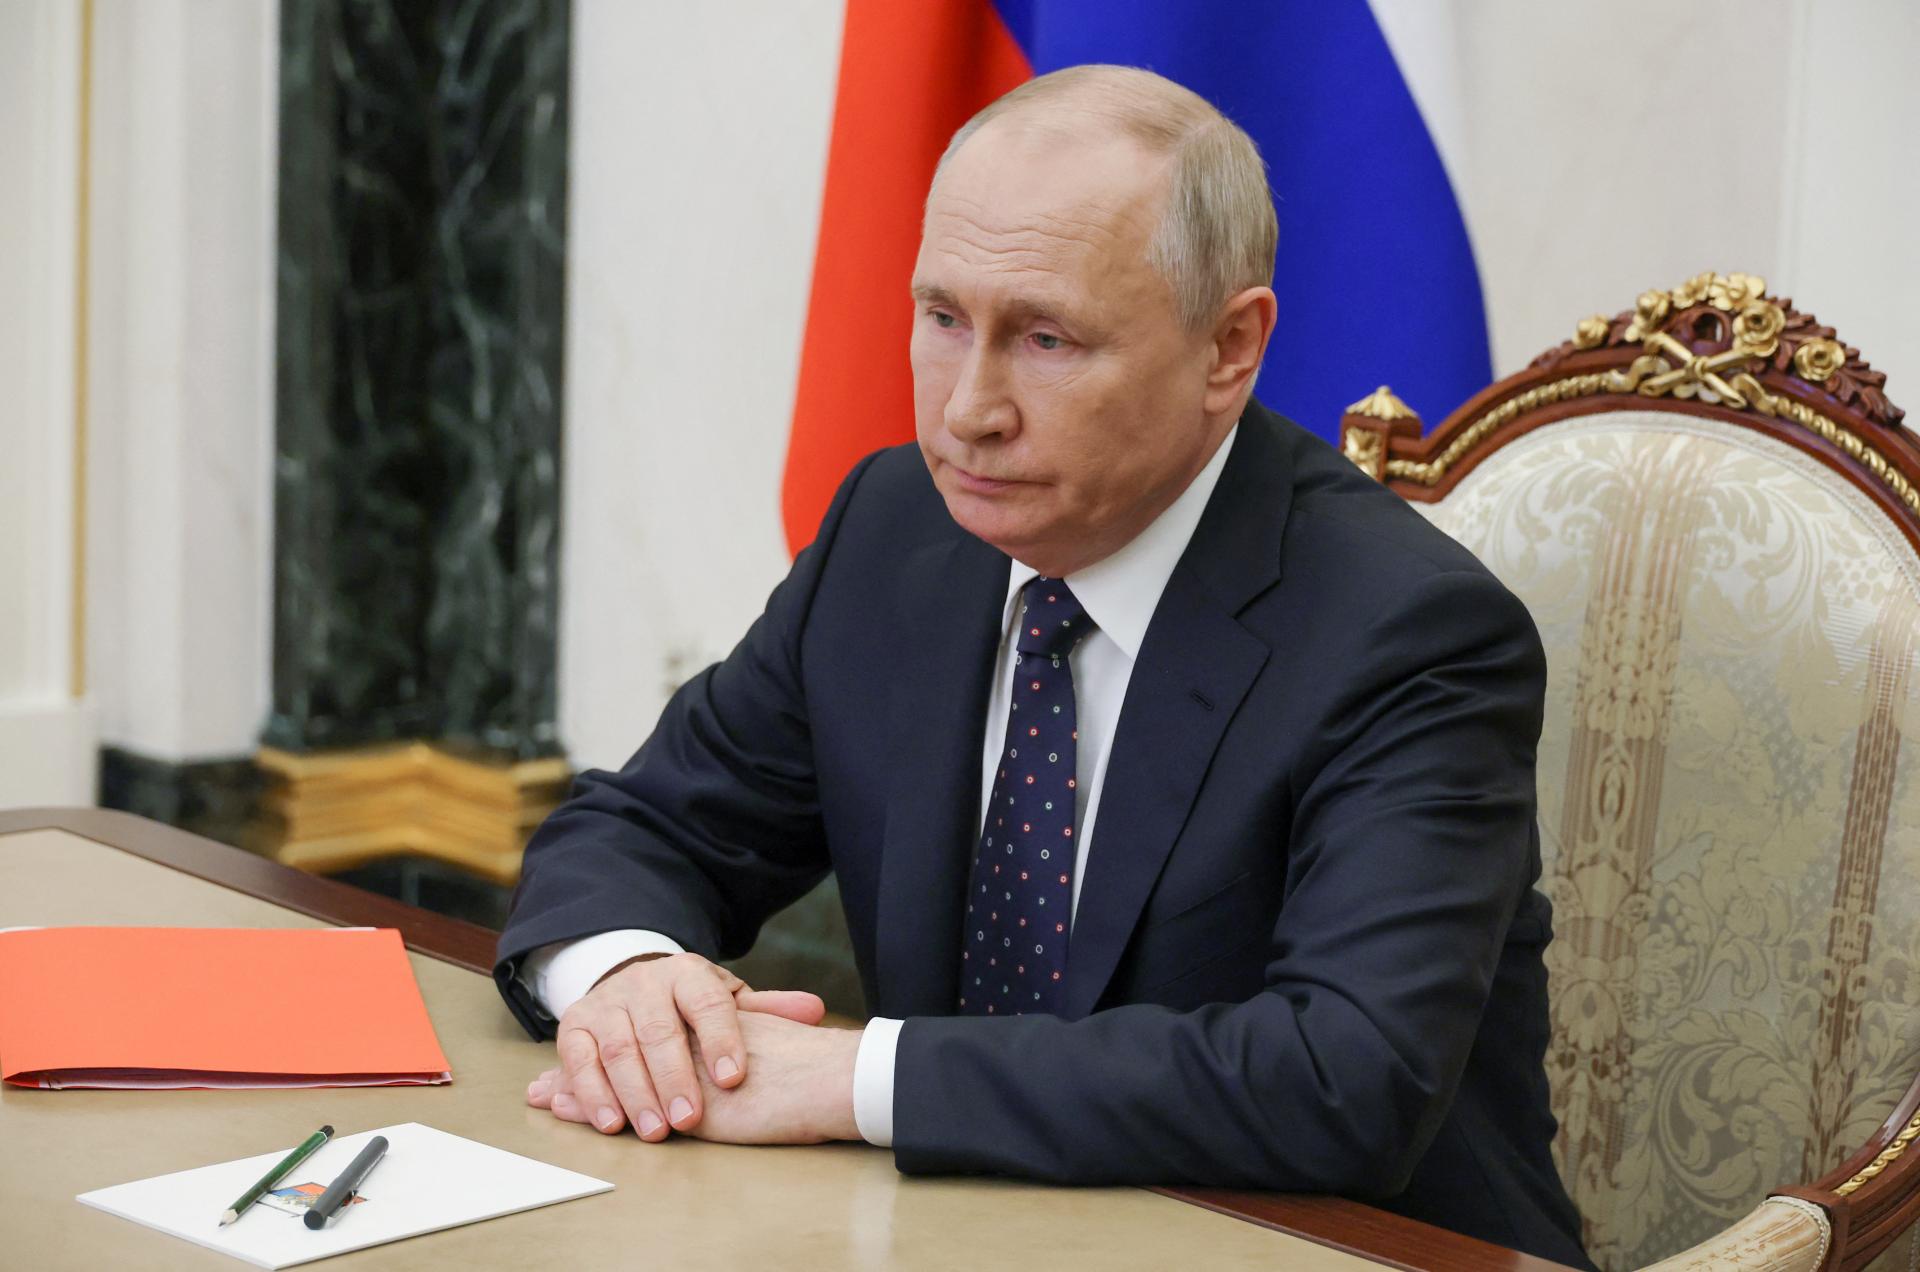 Putin sa osobne nezúčastní ani na summite G20 v Indii, sústredí sa na Ukrajinu